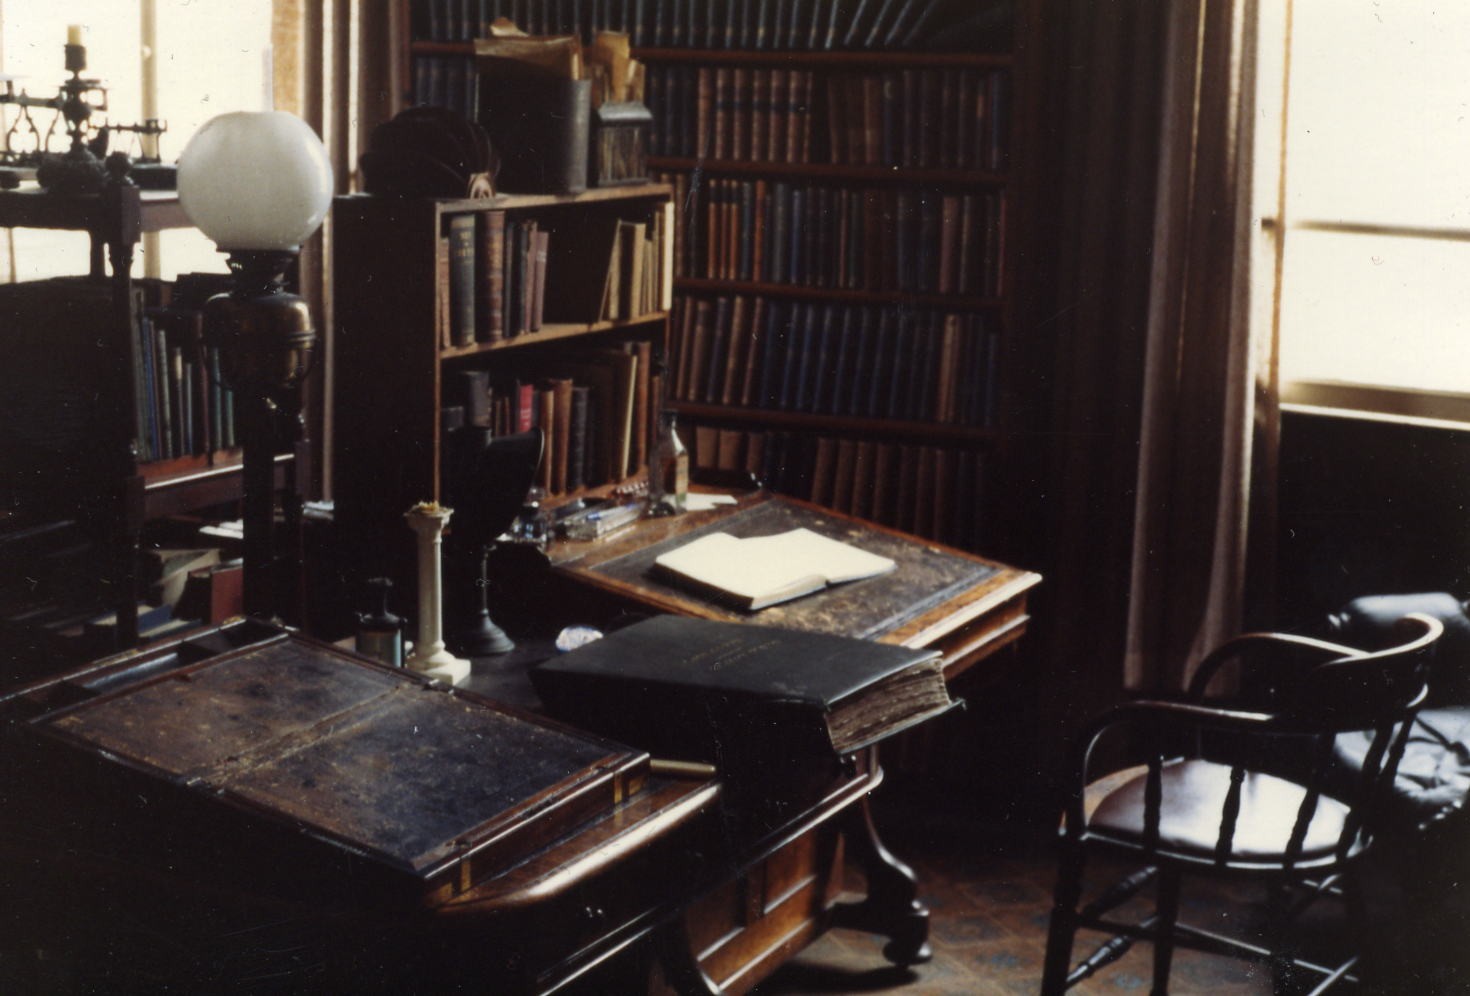 Author's Room